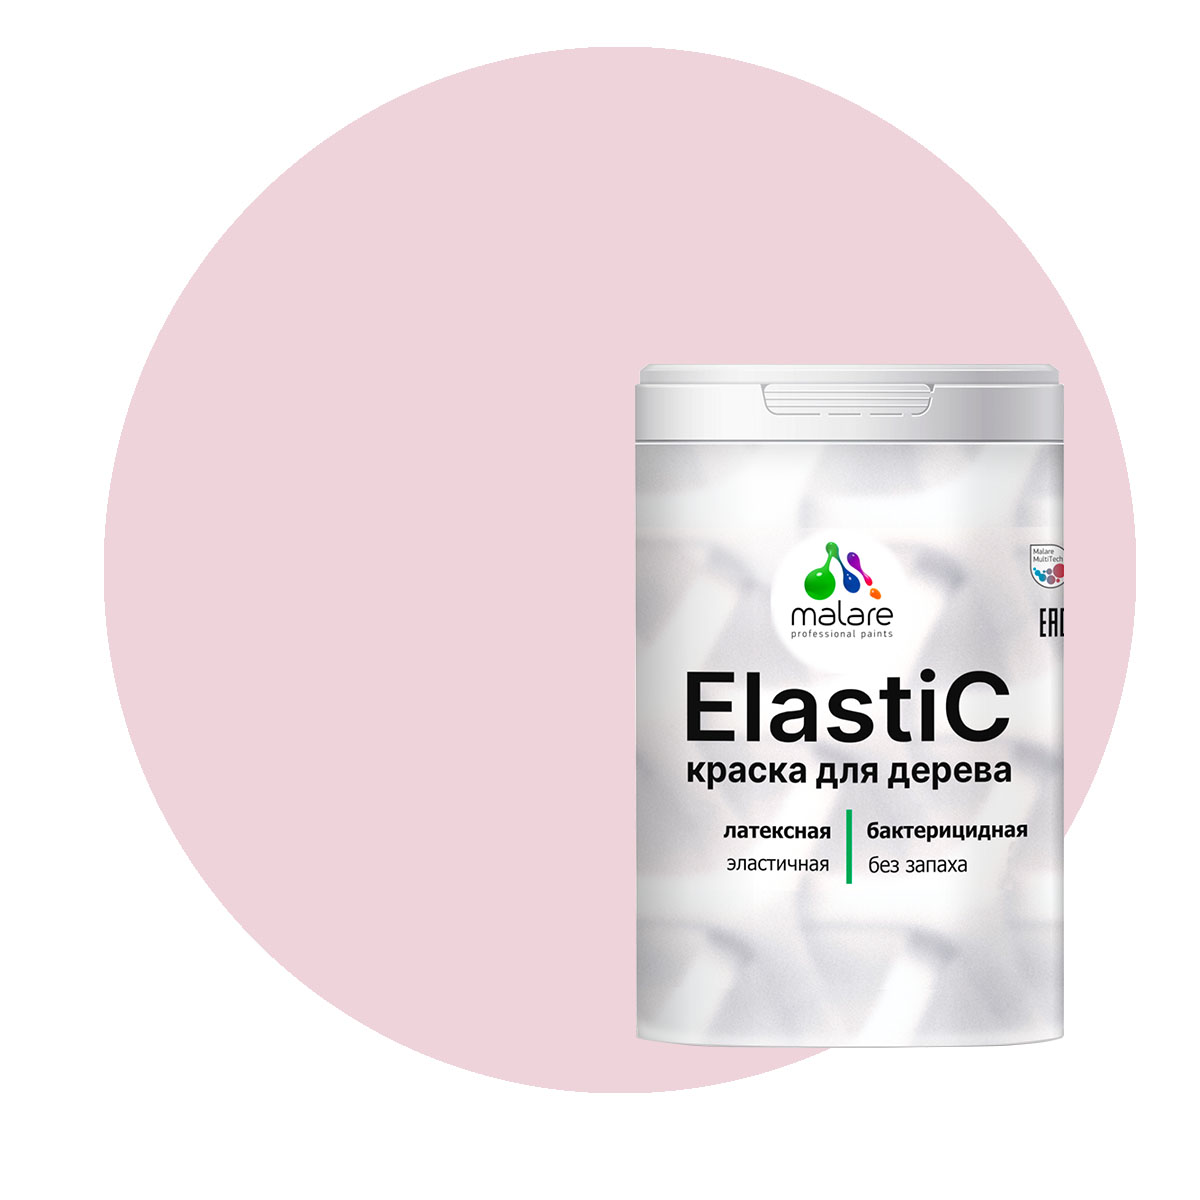 Краска Malare Elastic для деревянных поверхностей, бледно-розовый, 2 кг. помада 310 бледно розовый